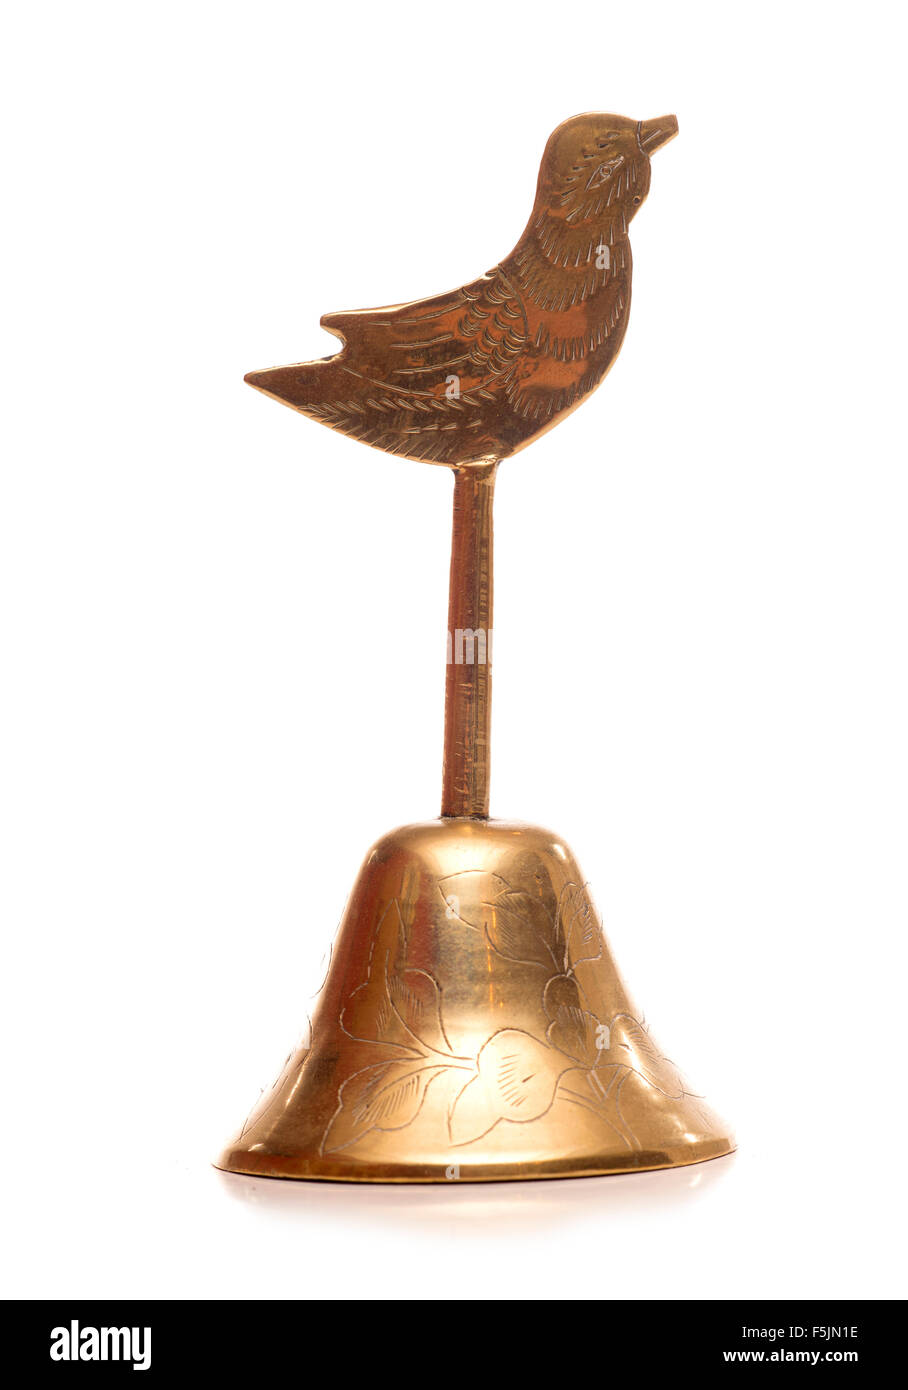 Rattle Bell with Bird Motif (Campana de cascabeles con motivo de